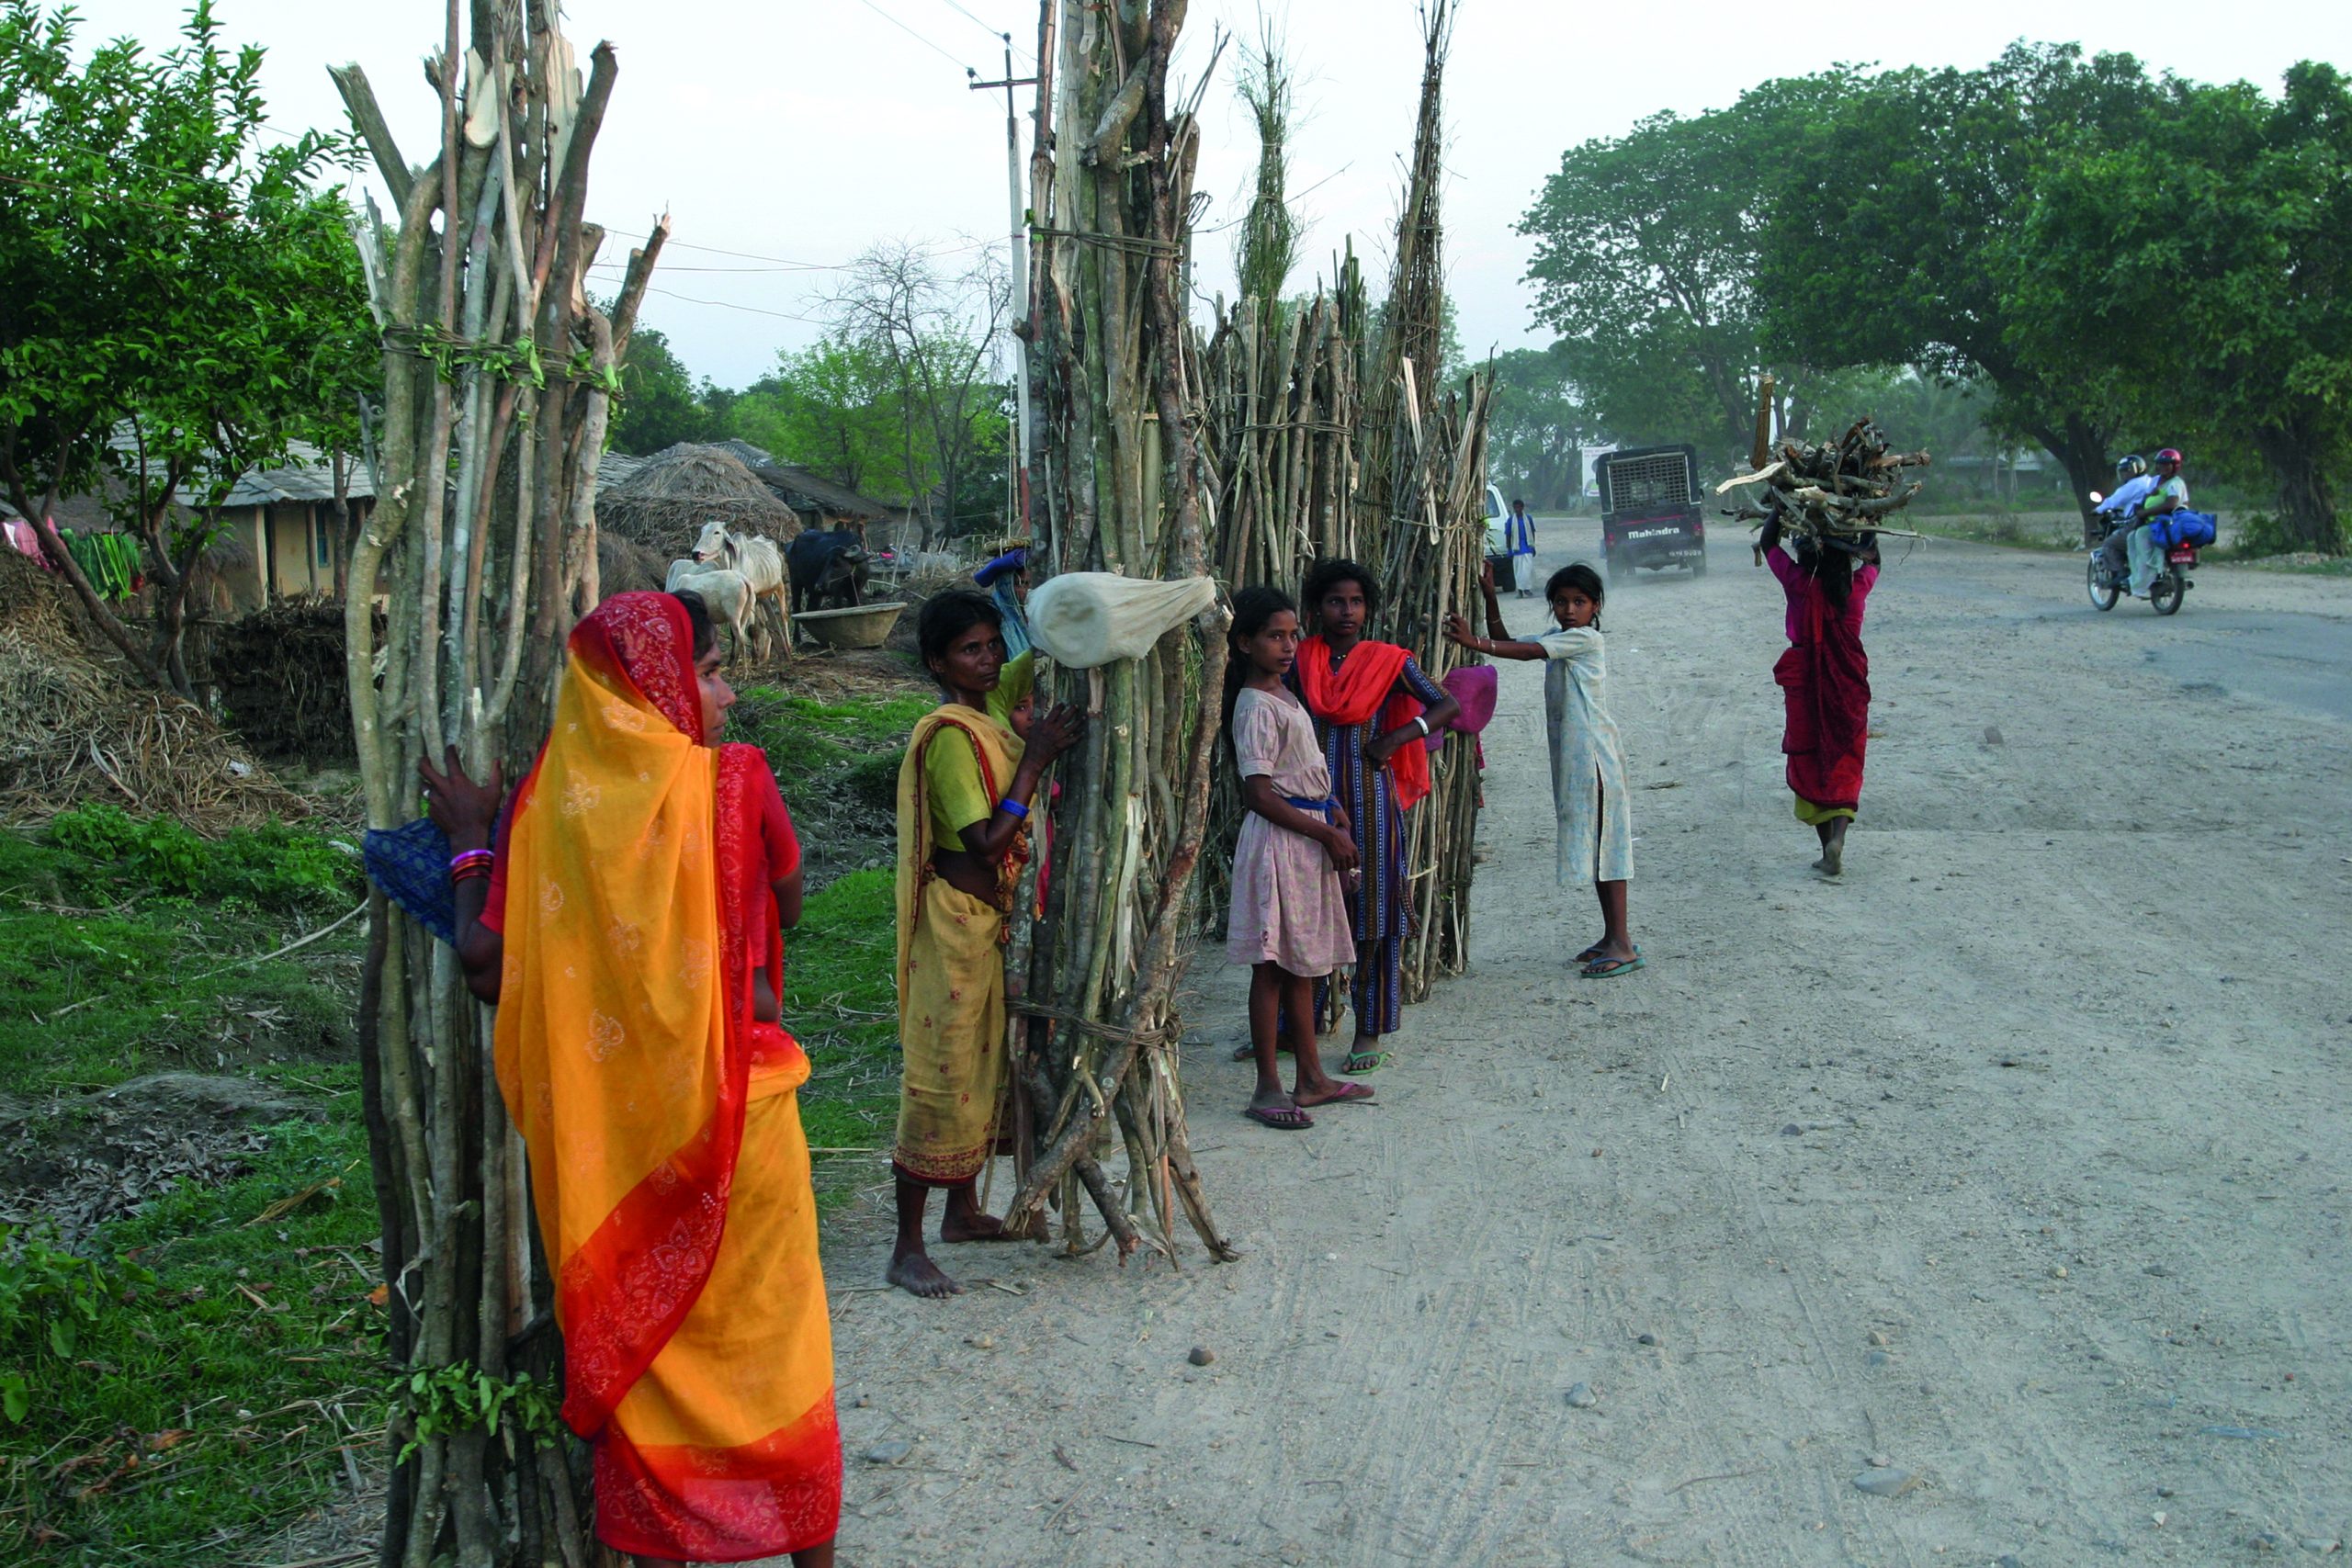 Ryhmä nuoria naisia kantamassa polttopuita. Ne ovat pituudeltaan parimetrisiä ja sidottu kimpuiksi. Ryhmä pysyttelee paikoillaan tien reunassa.